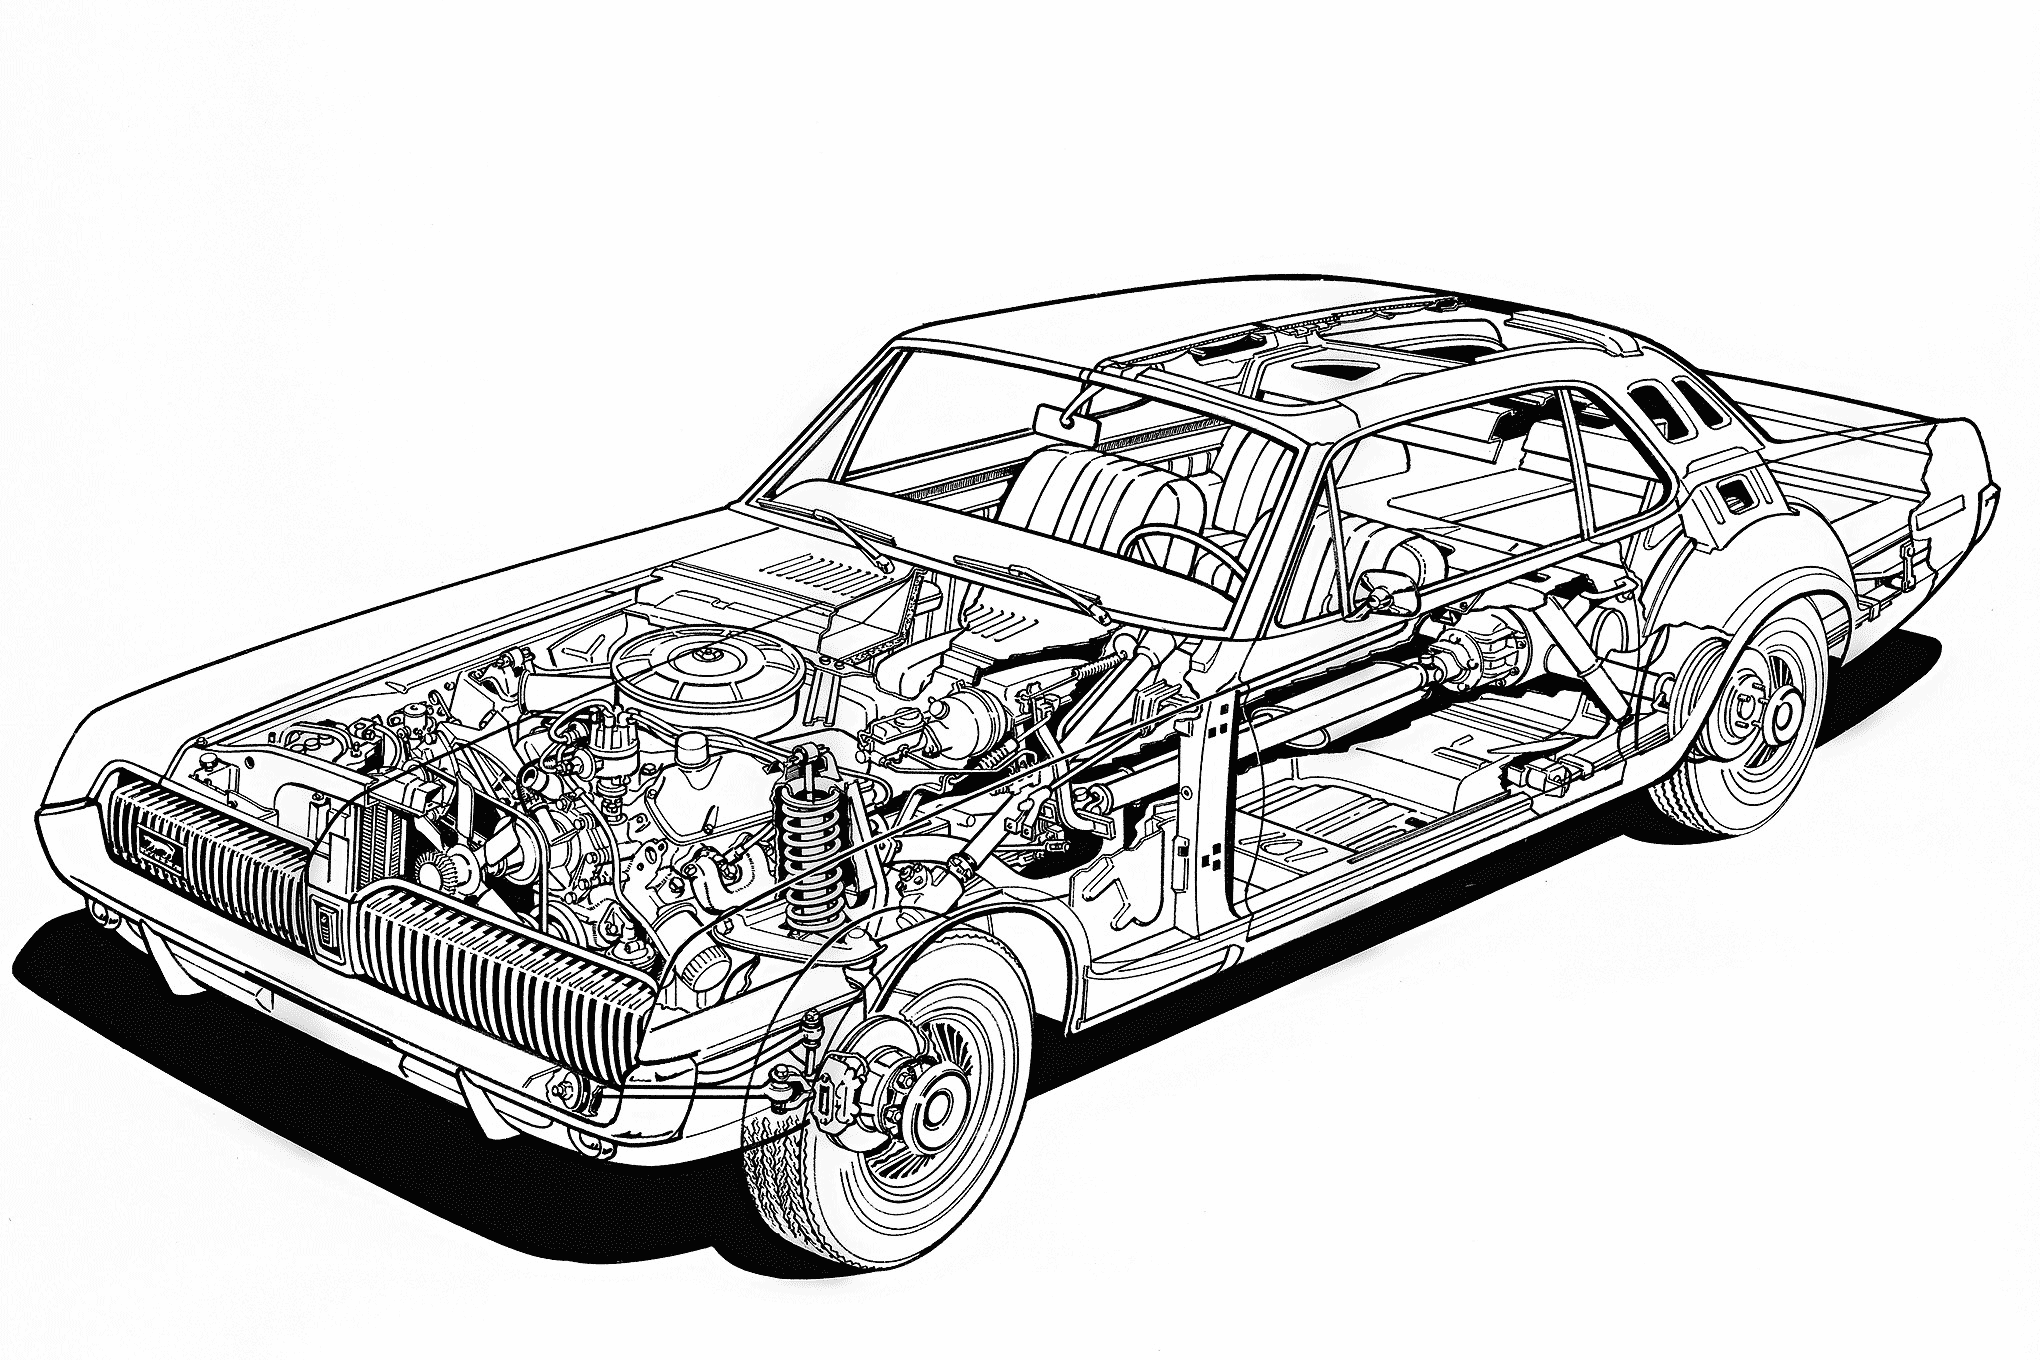 Mercury Cougar cutaway